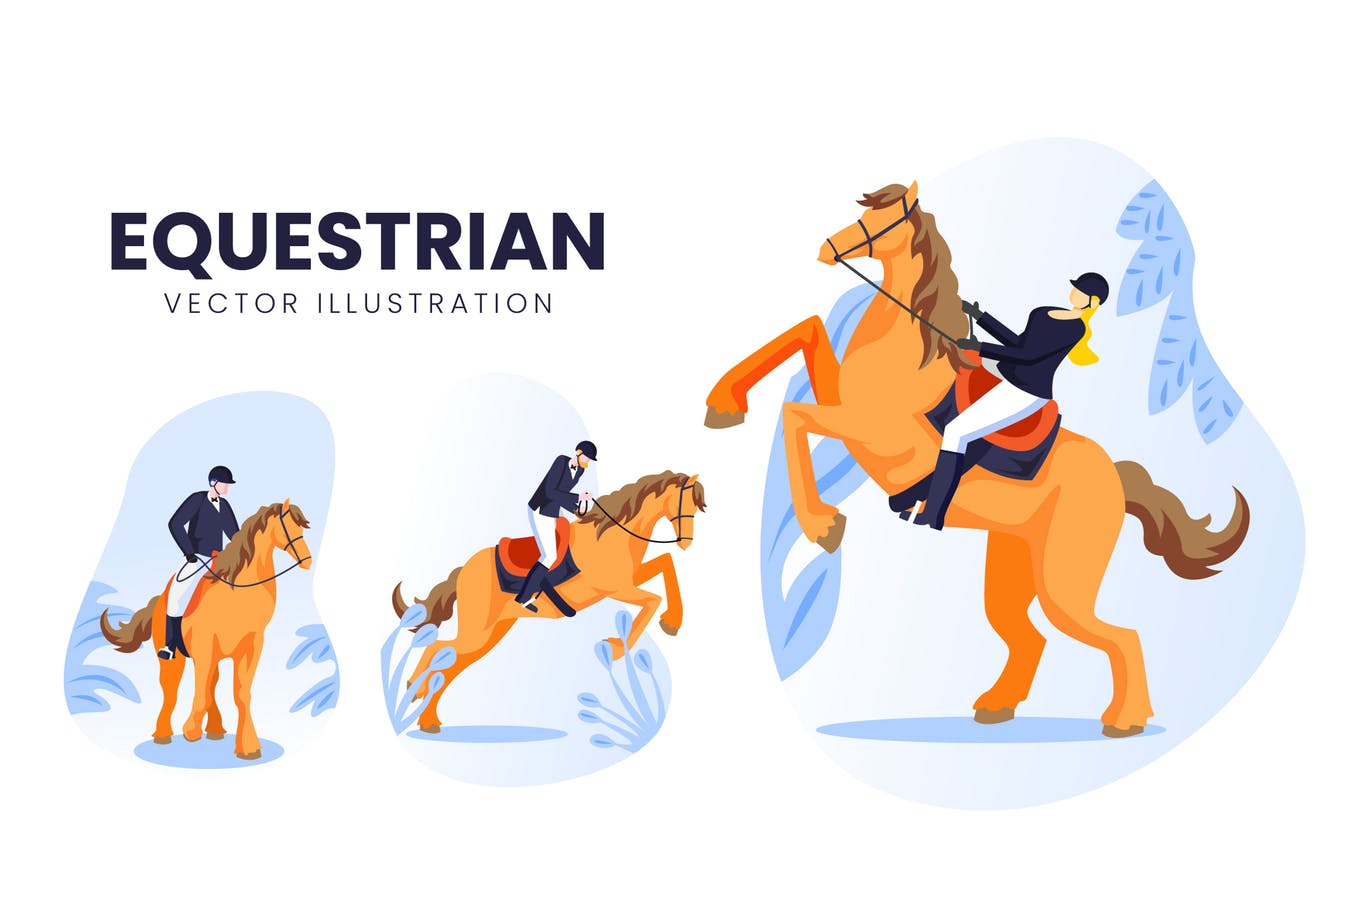 马术运动员人物形象16设计网精选手绘插画矢量素材 Equestrian Athlete Vector Character Set插图